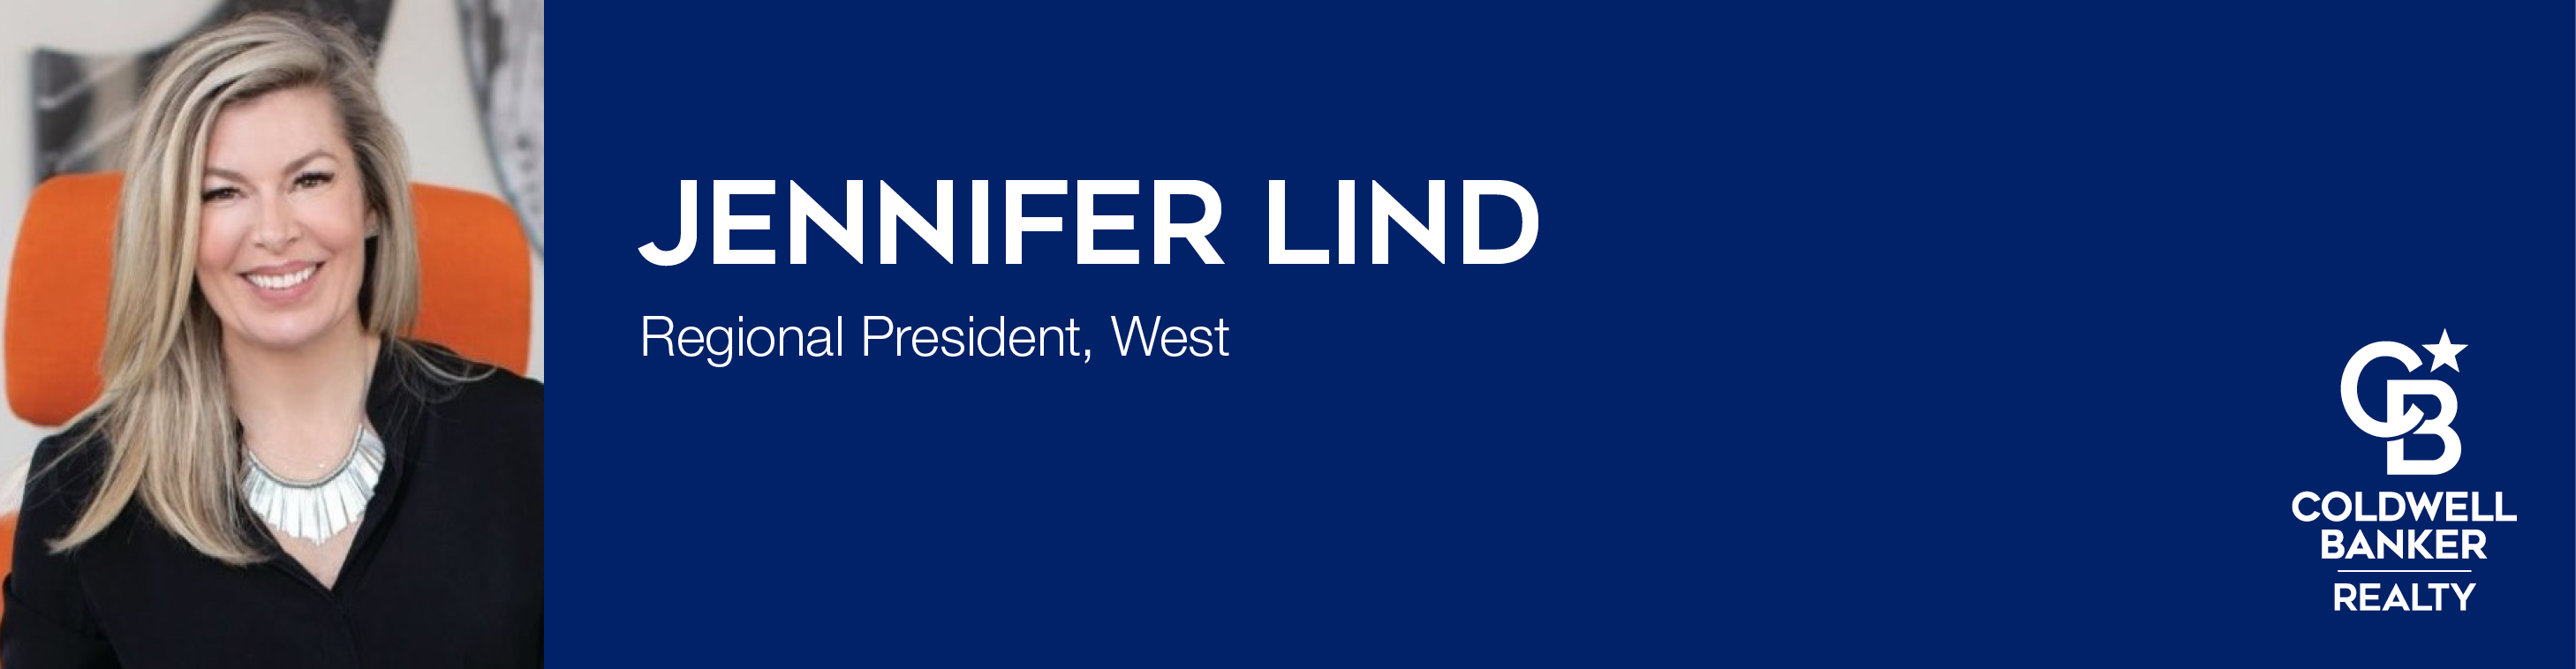 Jennifer Lind Regional President Coldwell Banker Realty